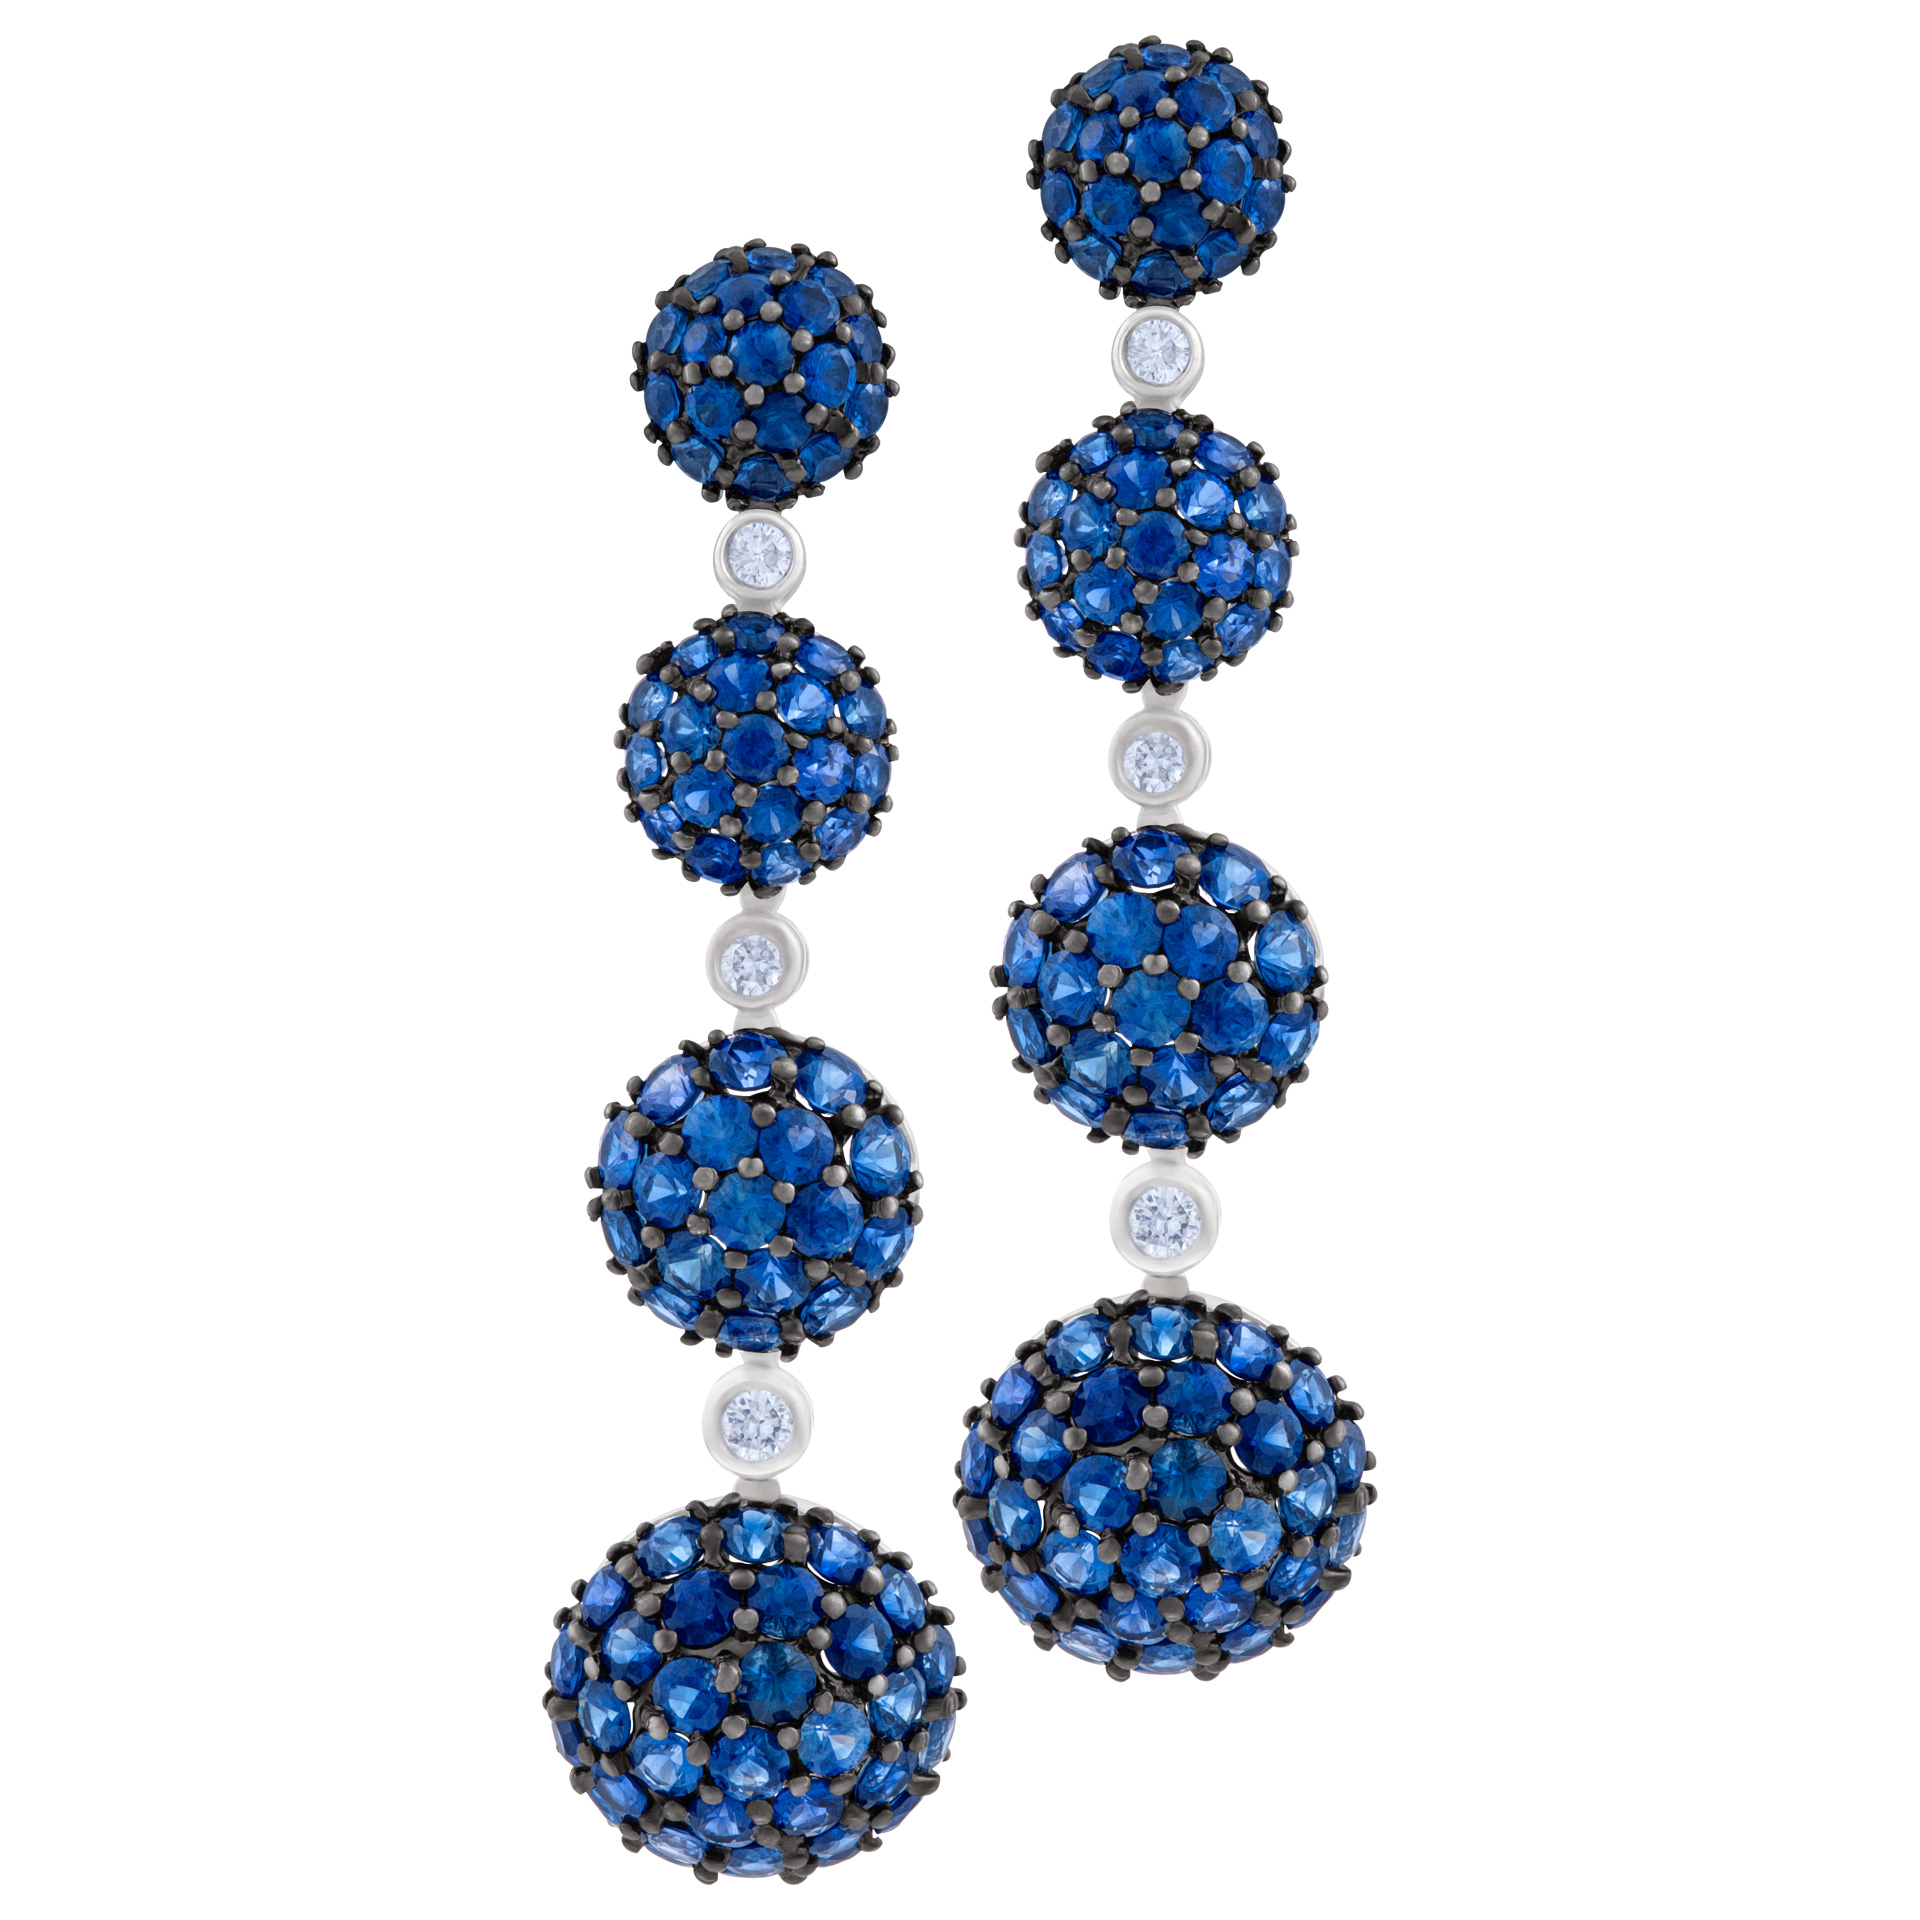 Sapphires/Diamonds earrings set in 18K white gold image 1